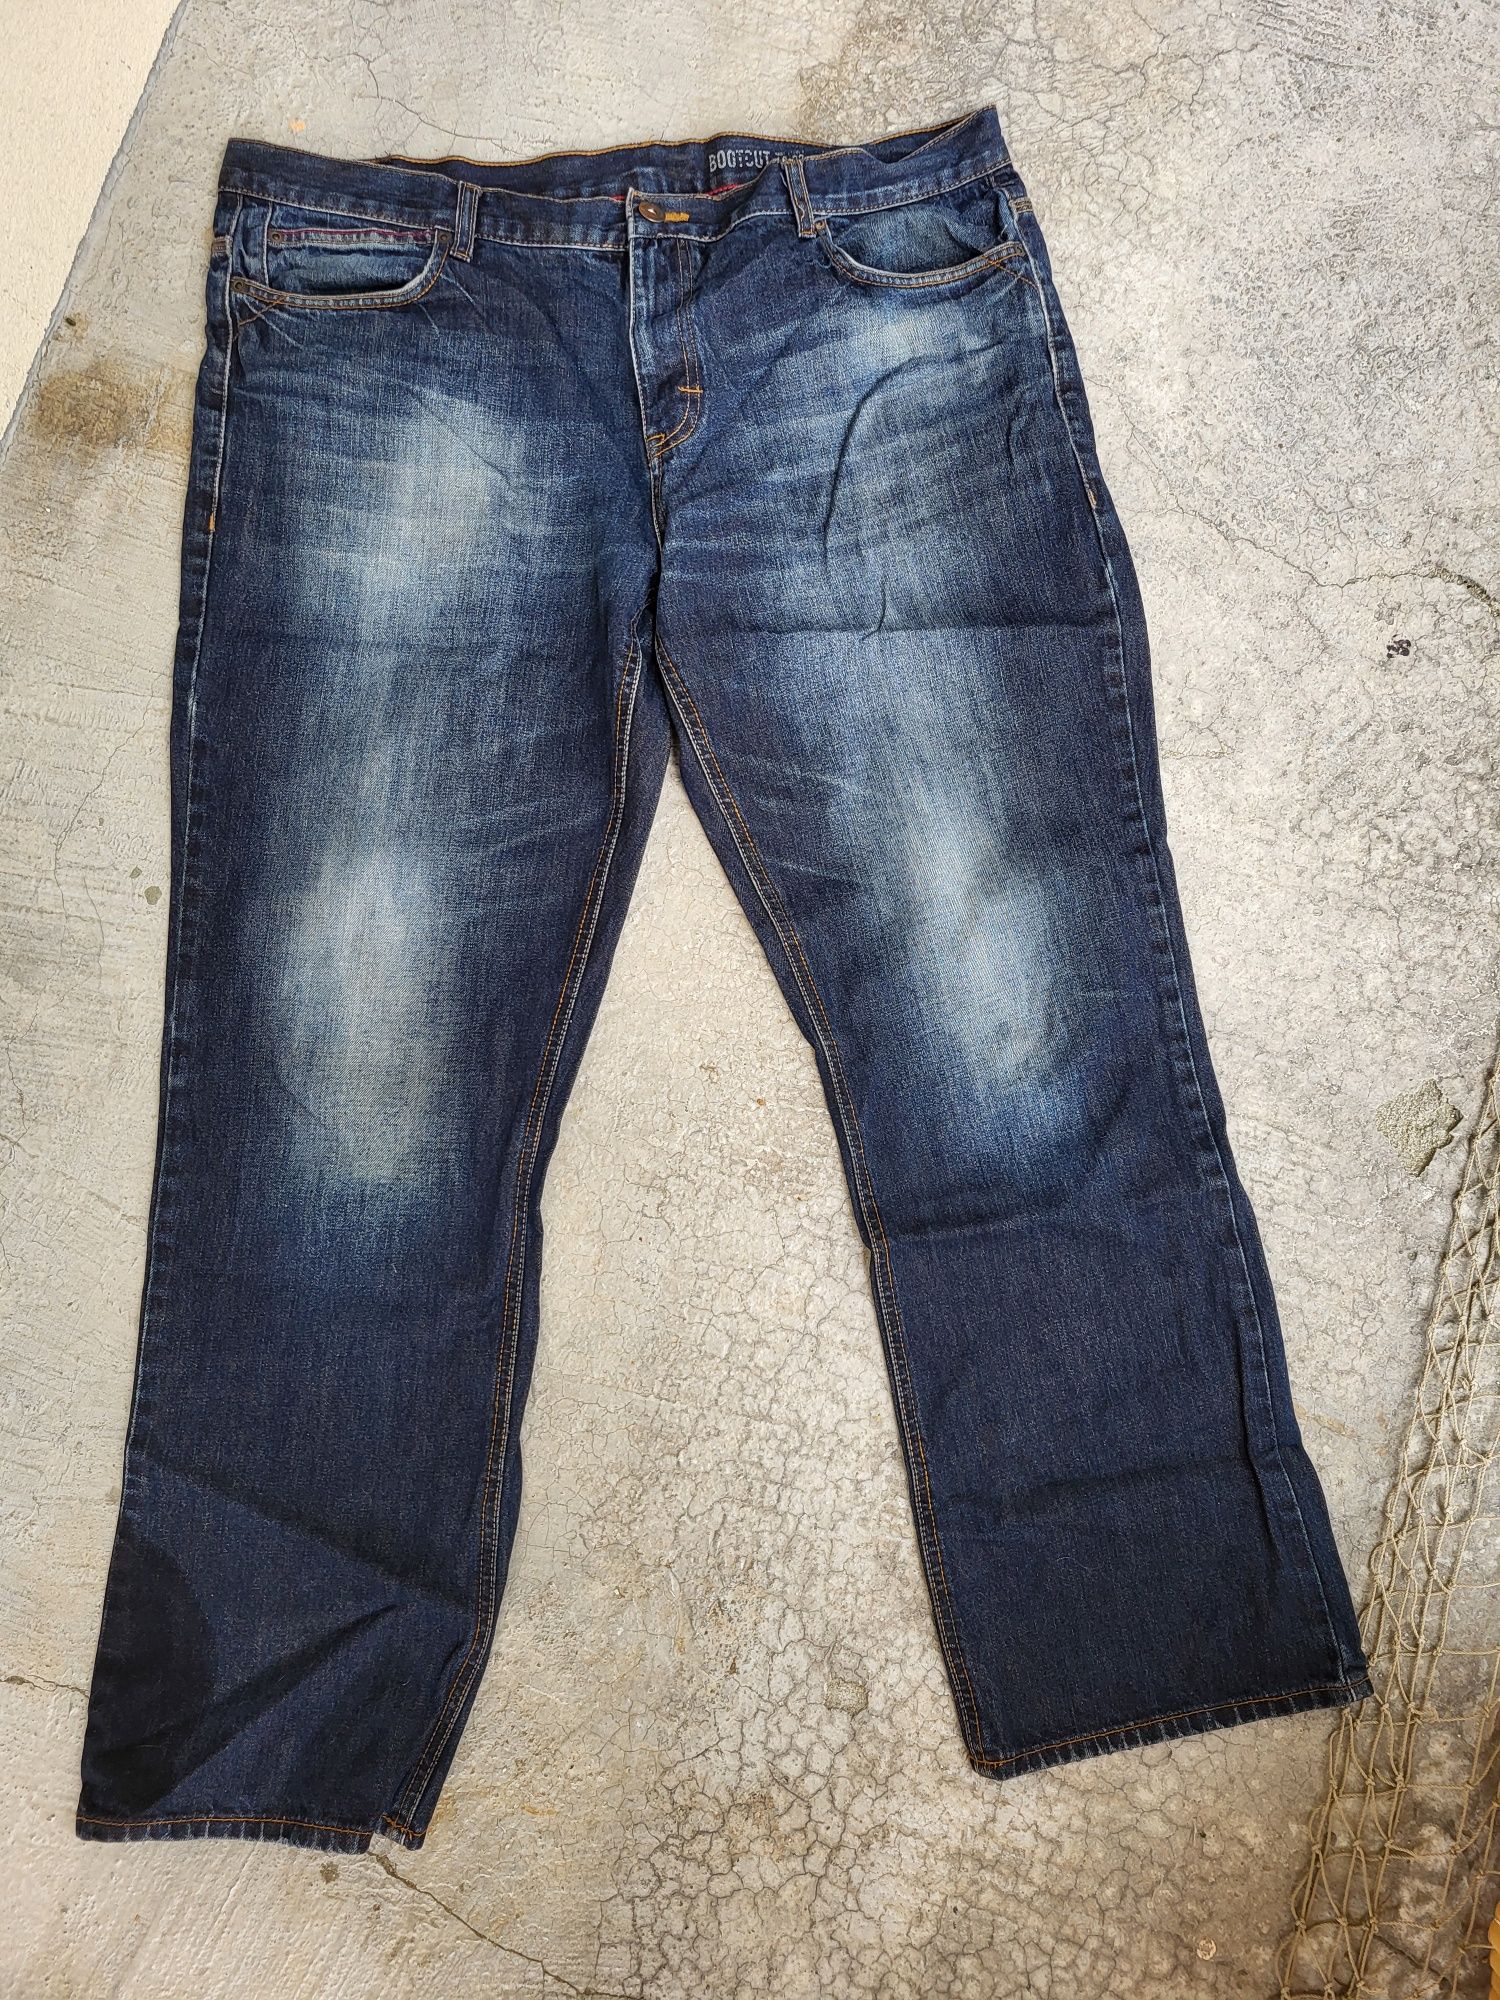 Duże spodnie duży rozmiar 3Xl 2Xl męskie jeansy 42/32